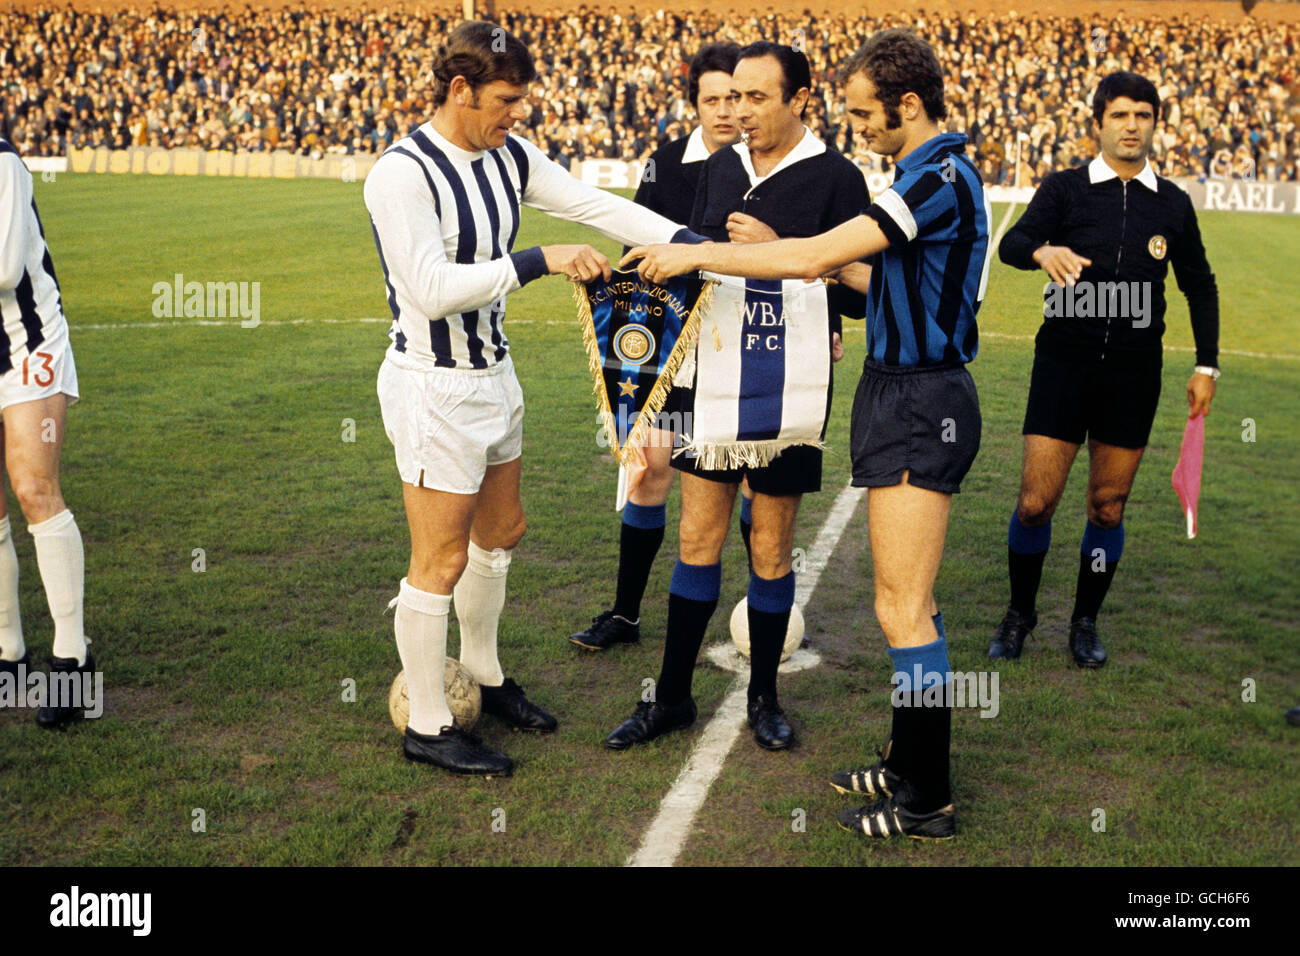 Football - coupe anglo-italienne - West Bromwich Albion / Inter Milan.Les pennants du club sont échangés avant le coup d'envoi lors du match de la coupe anglo-italienne Banque D'Images